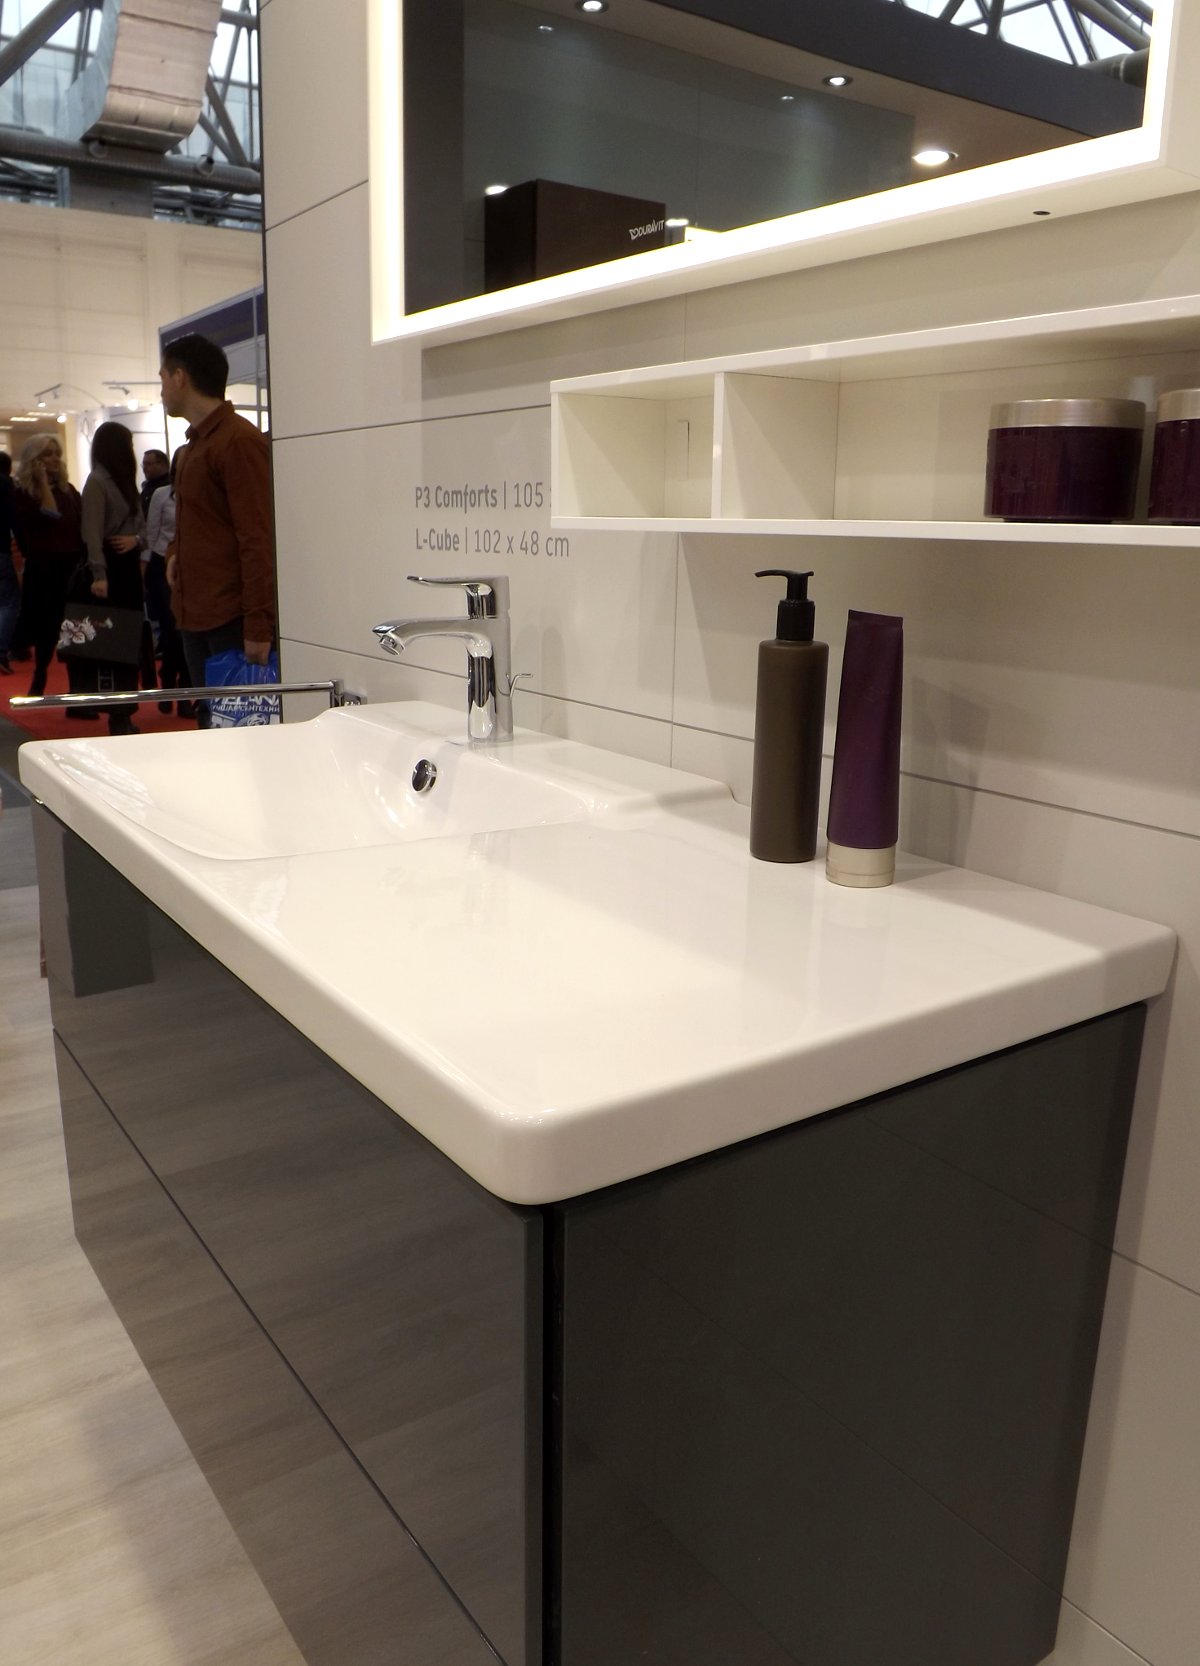 Мебель для ванной и зеркало L-Cube с раковиной P3 Comforts от Duravit на выставке МосБилд 2015. Вид А